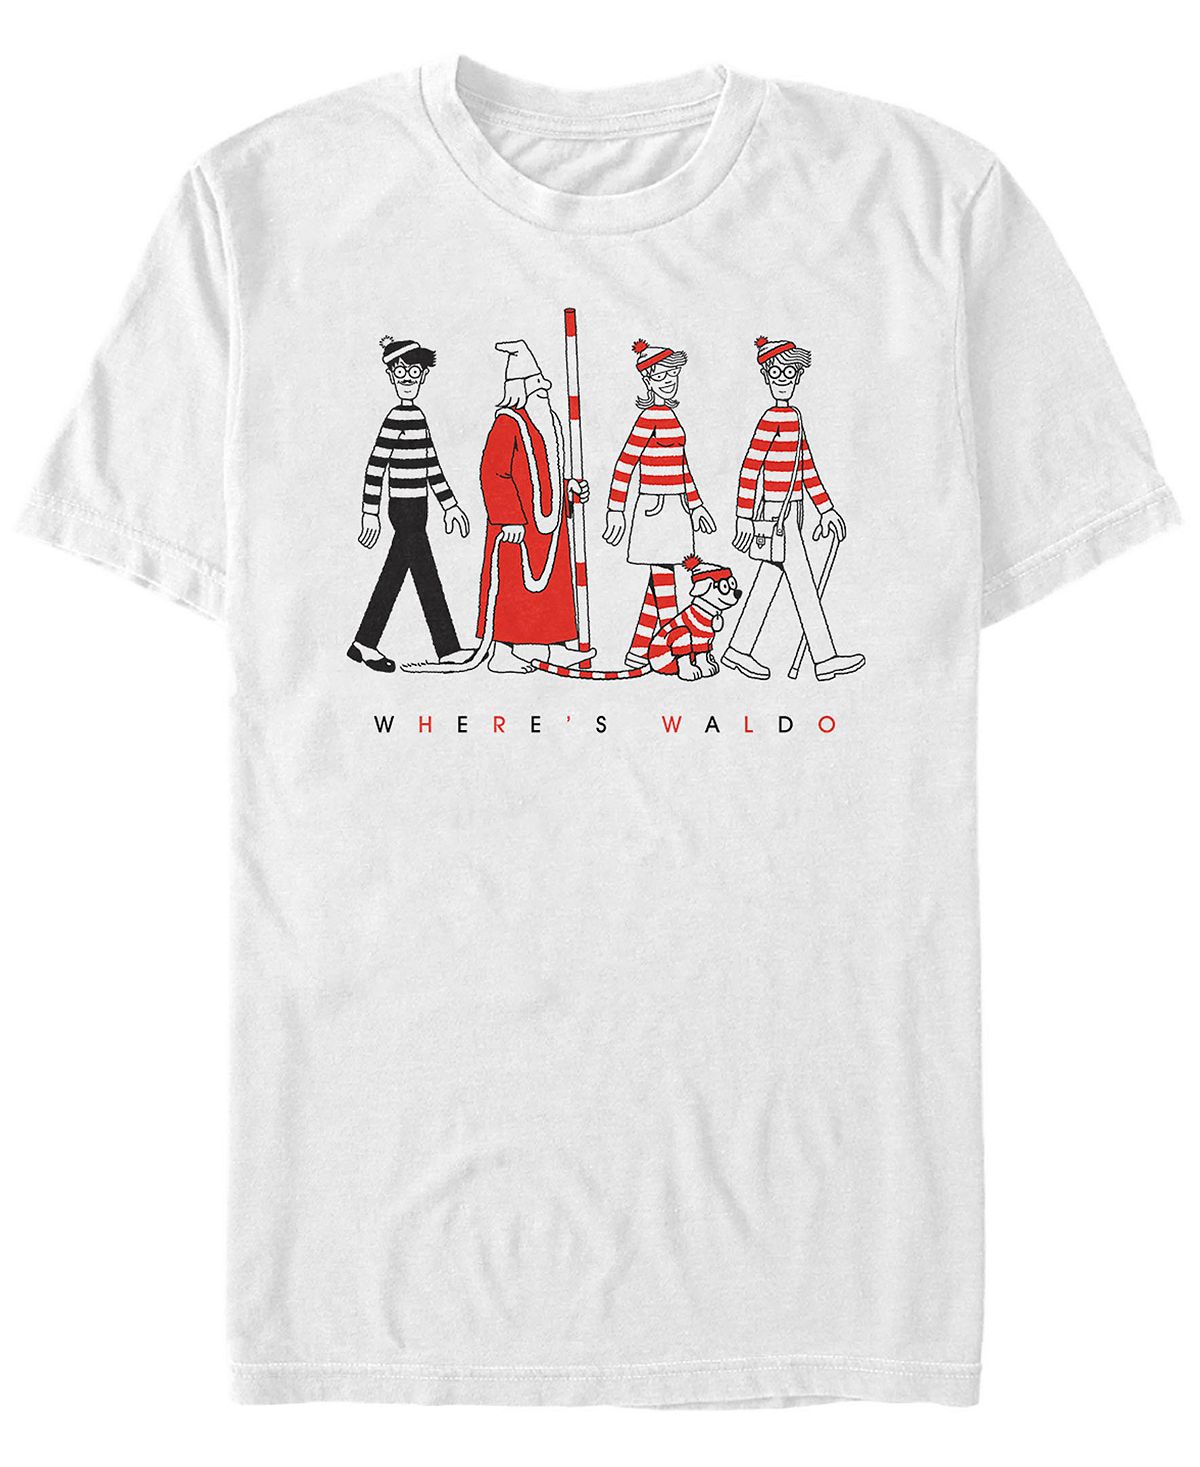 Мужская футболка с коротким рукавом where's waldo character line up Fifth Sun, белый emerson ralph waldo nature